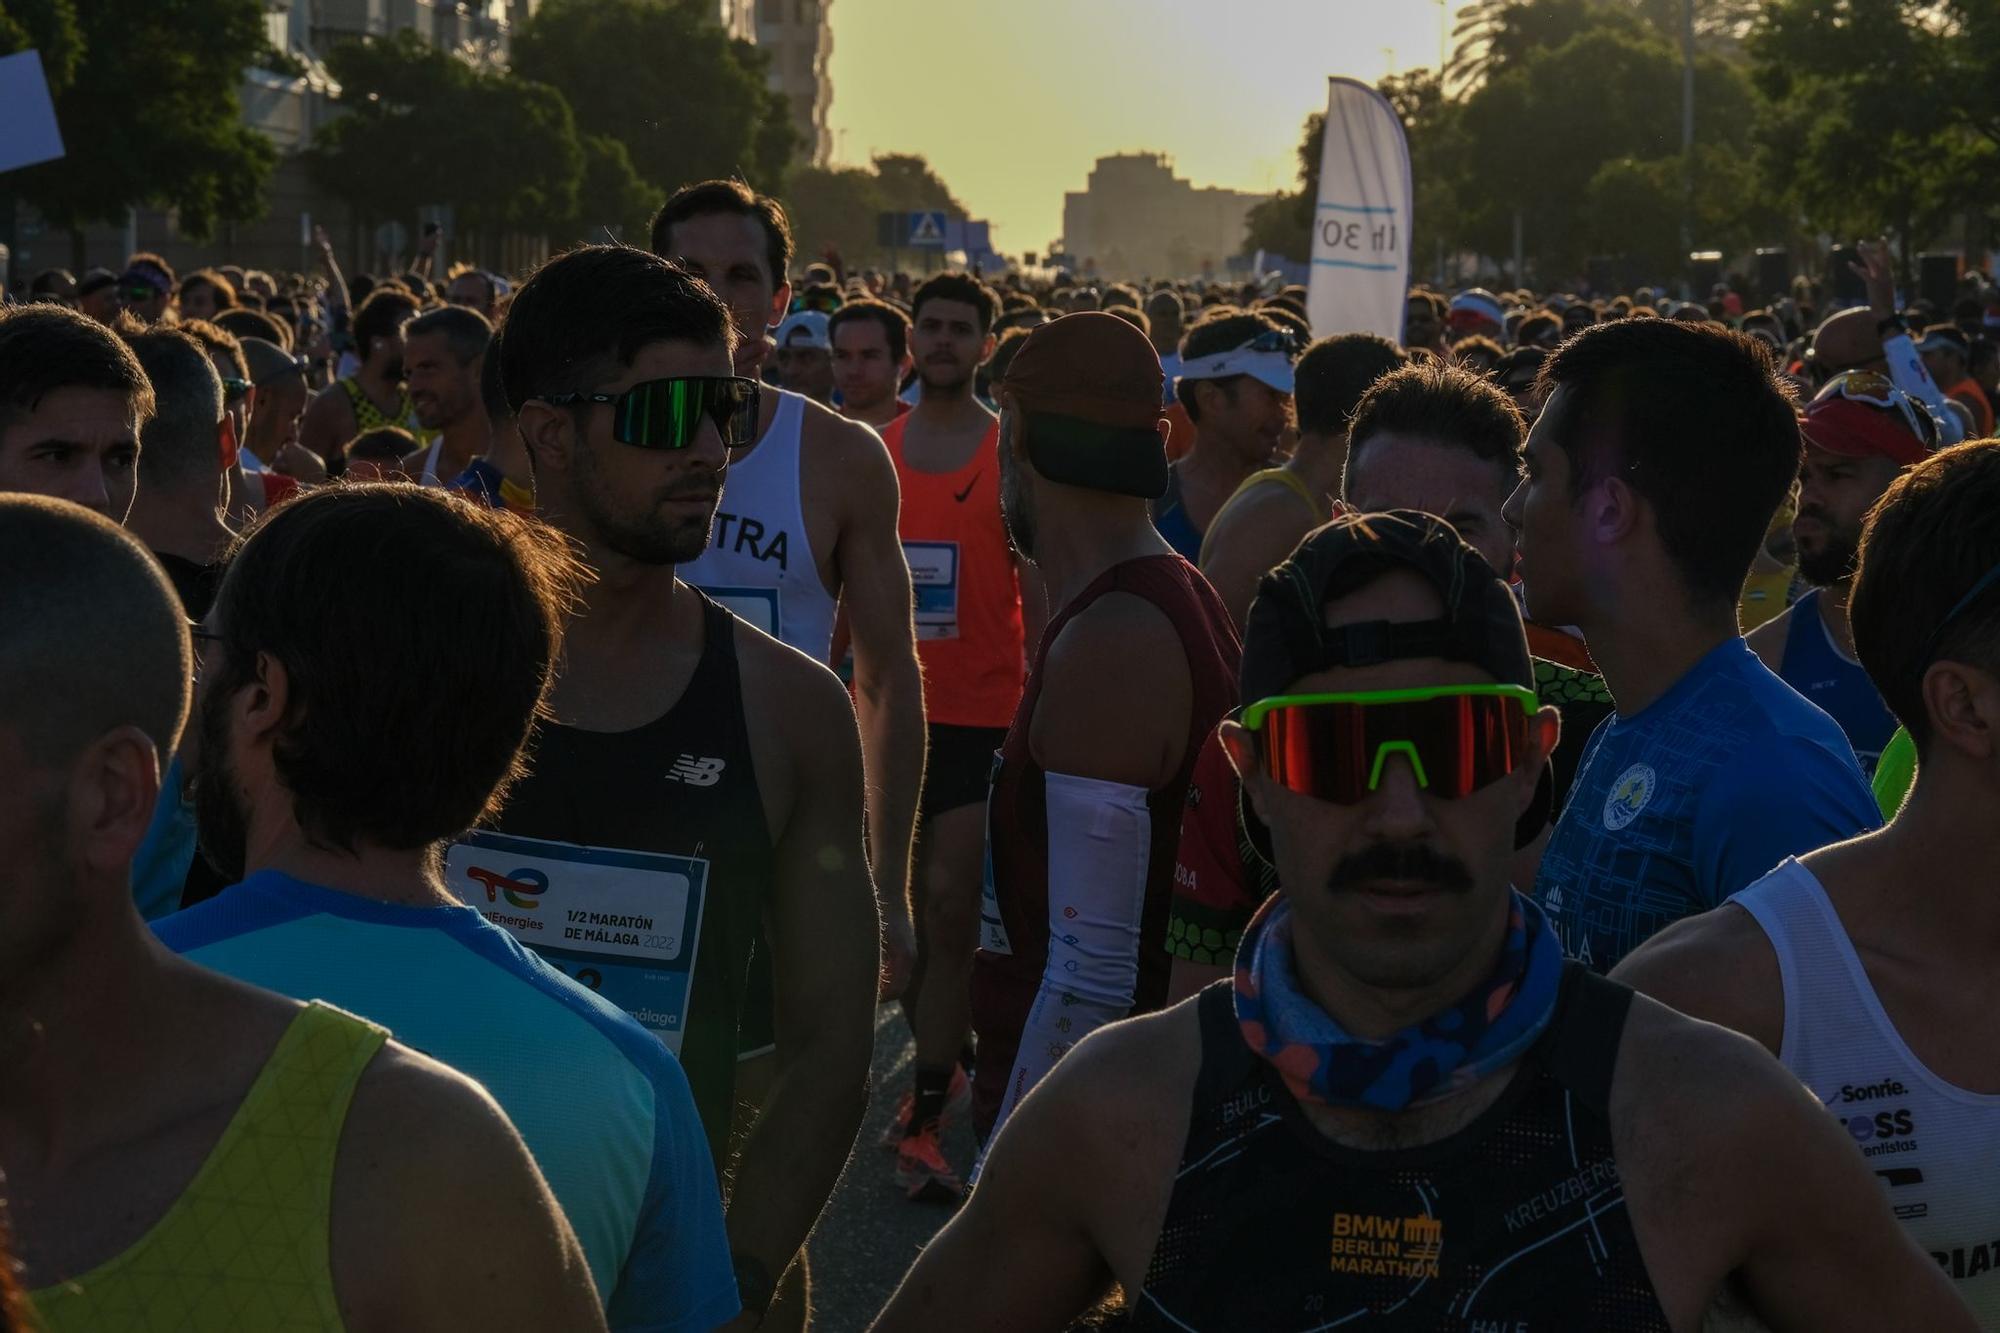 La TotalEnergies Media Maratón Ciudad de Málaga 2022, en imágenes